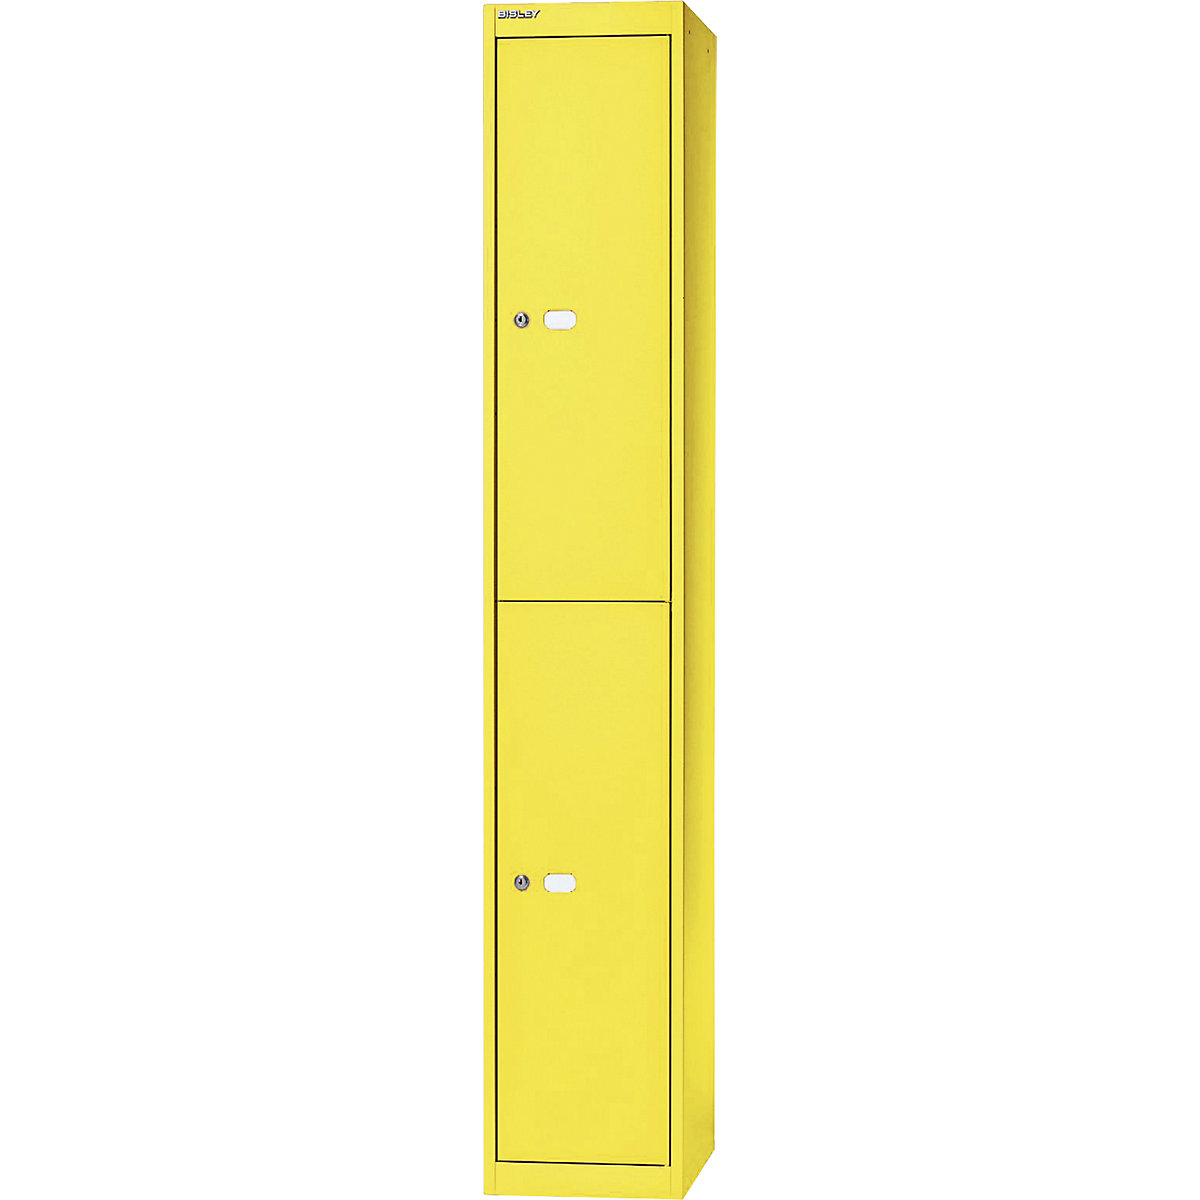 BISLEY OFFICE Garderobensystem, Tiefe 457 mm, 2 Fächer mit je 1 Kleiderhaken, gelb